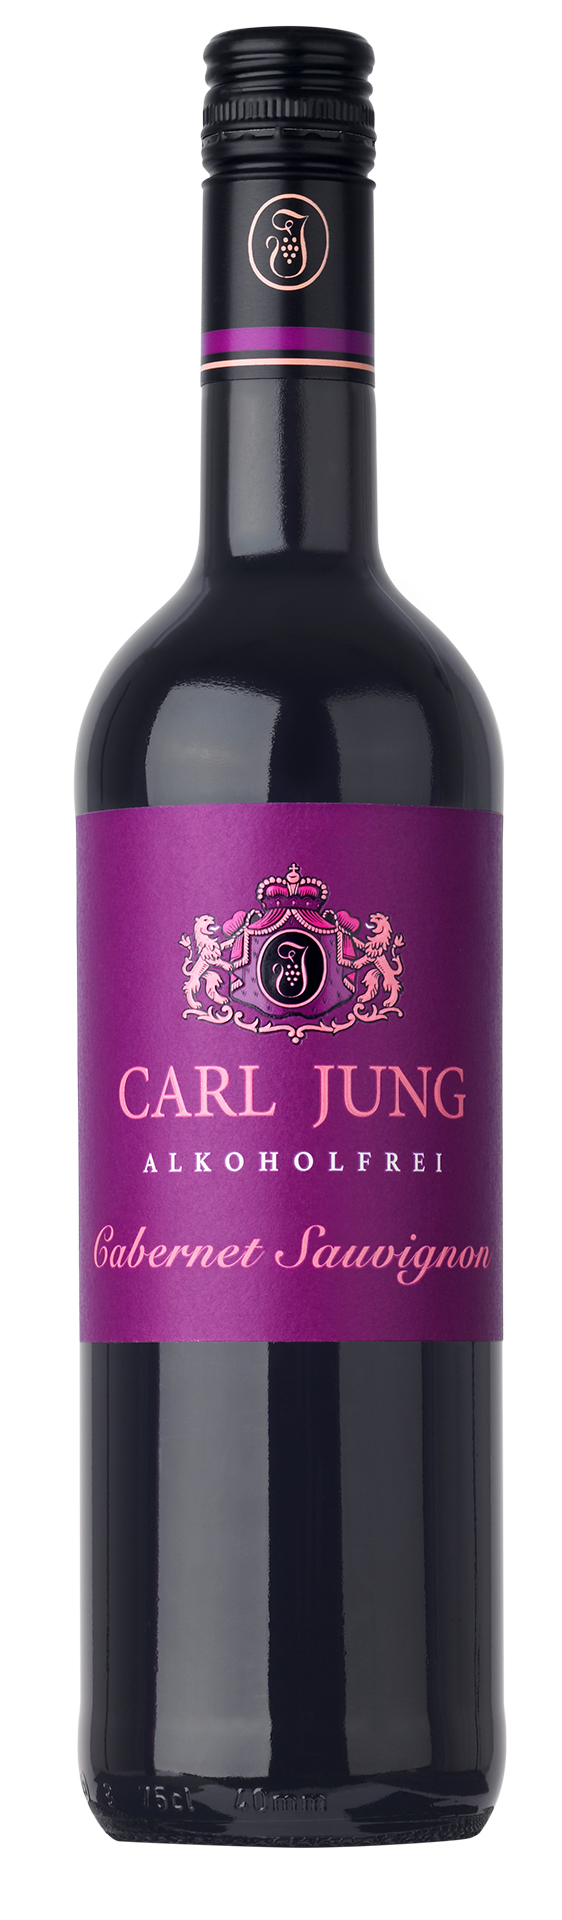 Jung alkoholfreier Merlot 0,75l - Rotwein Carl